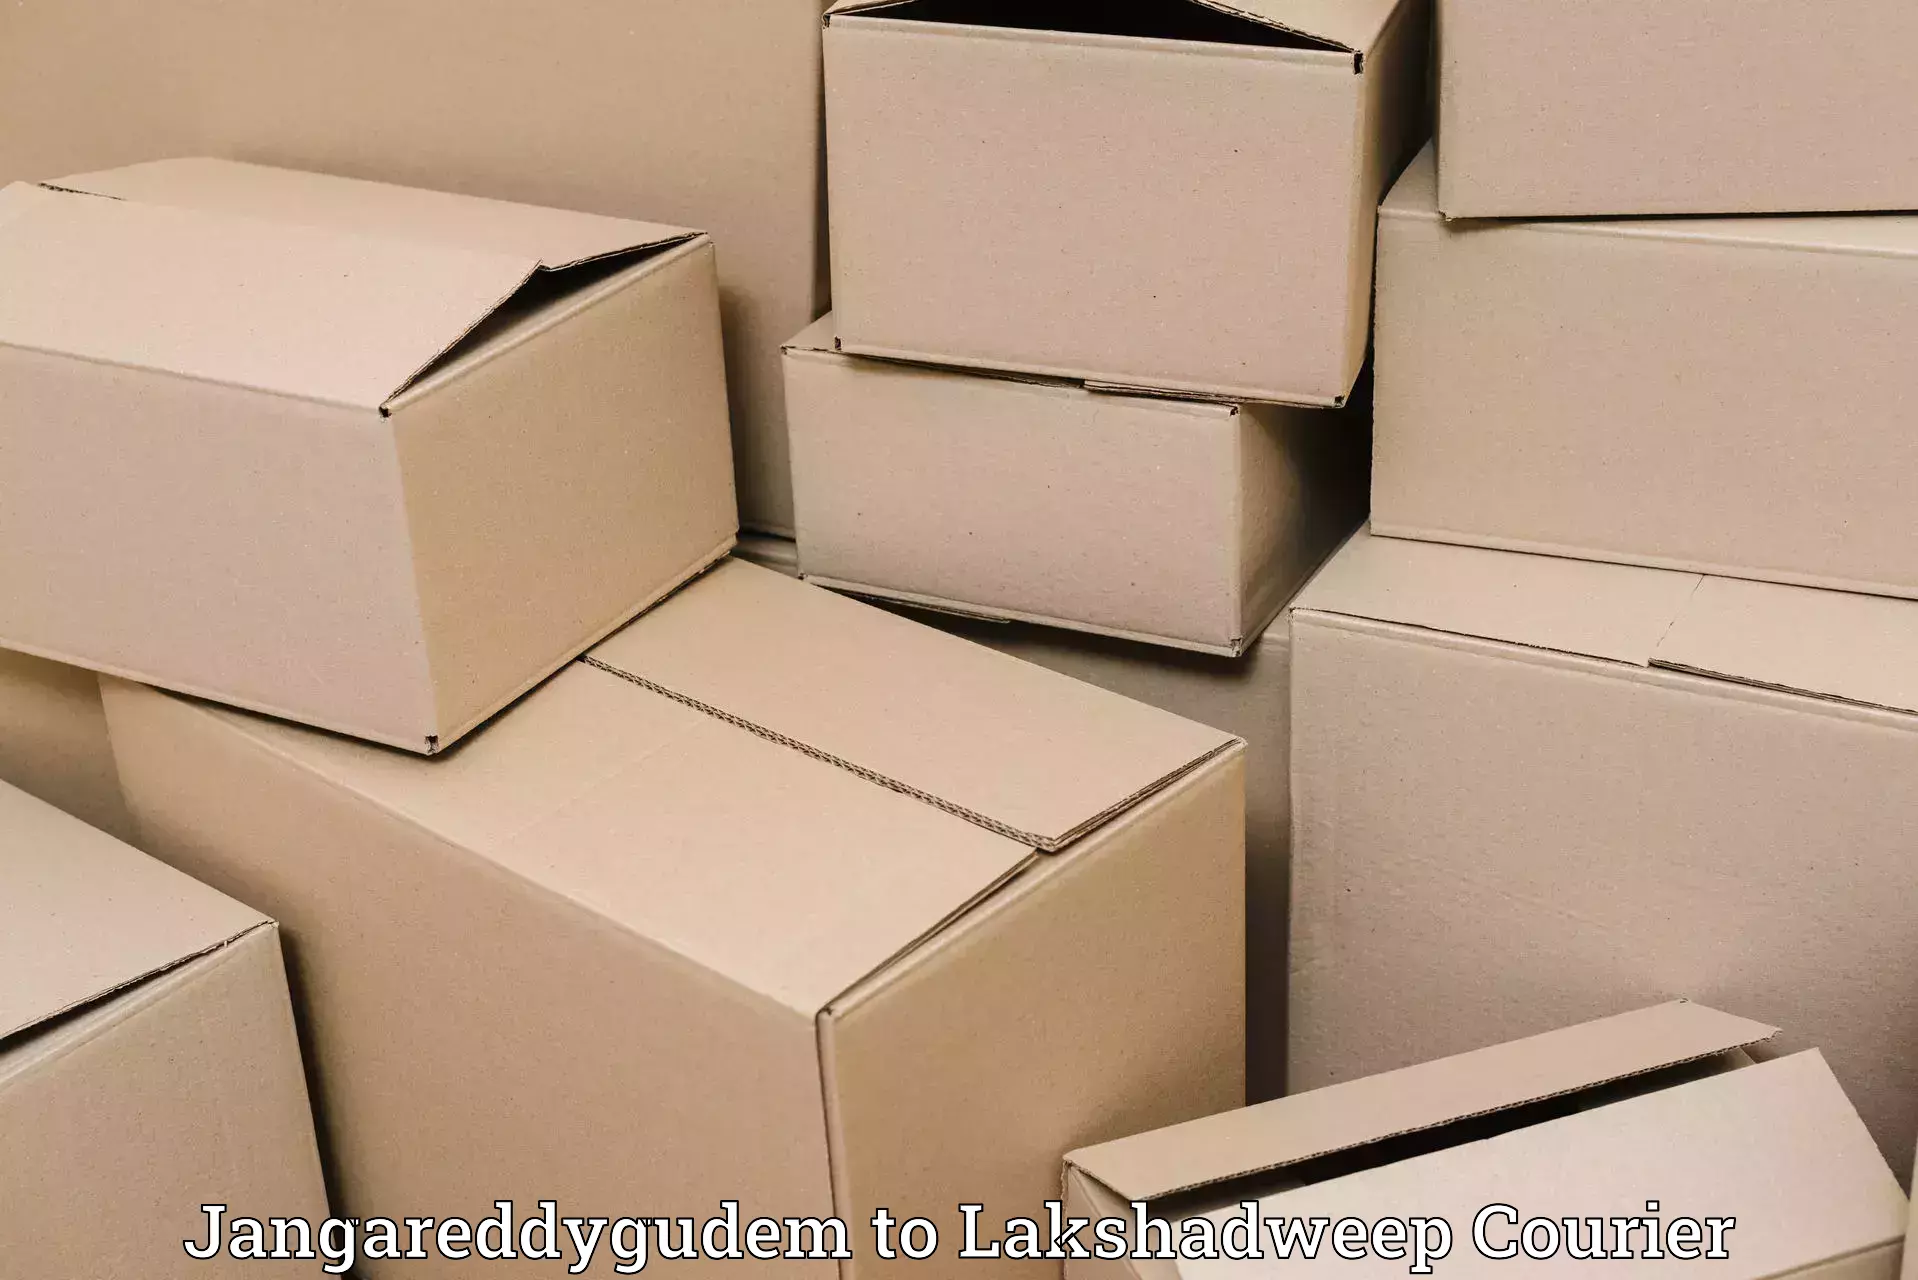 Secure packaging Jangareddygudem to Lakshadweep